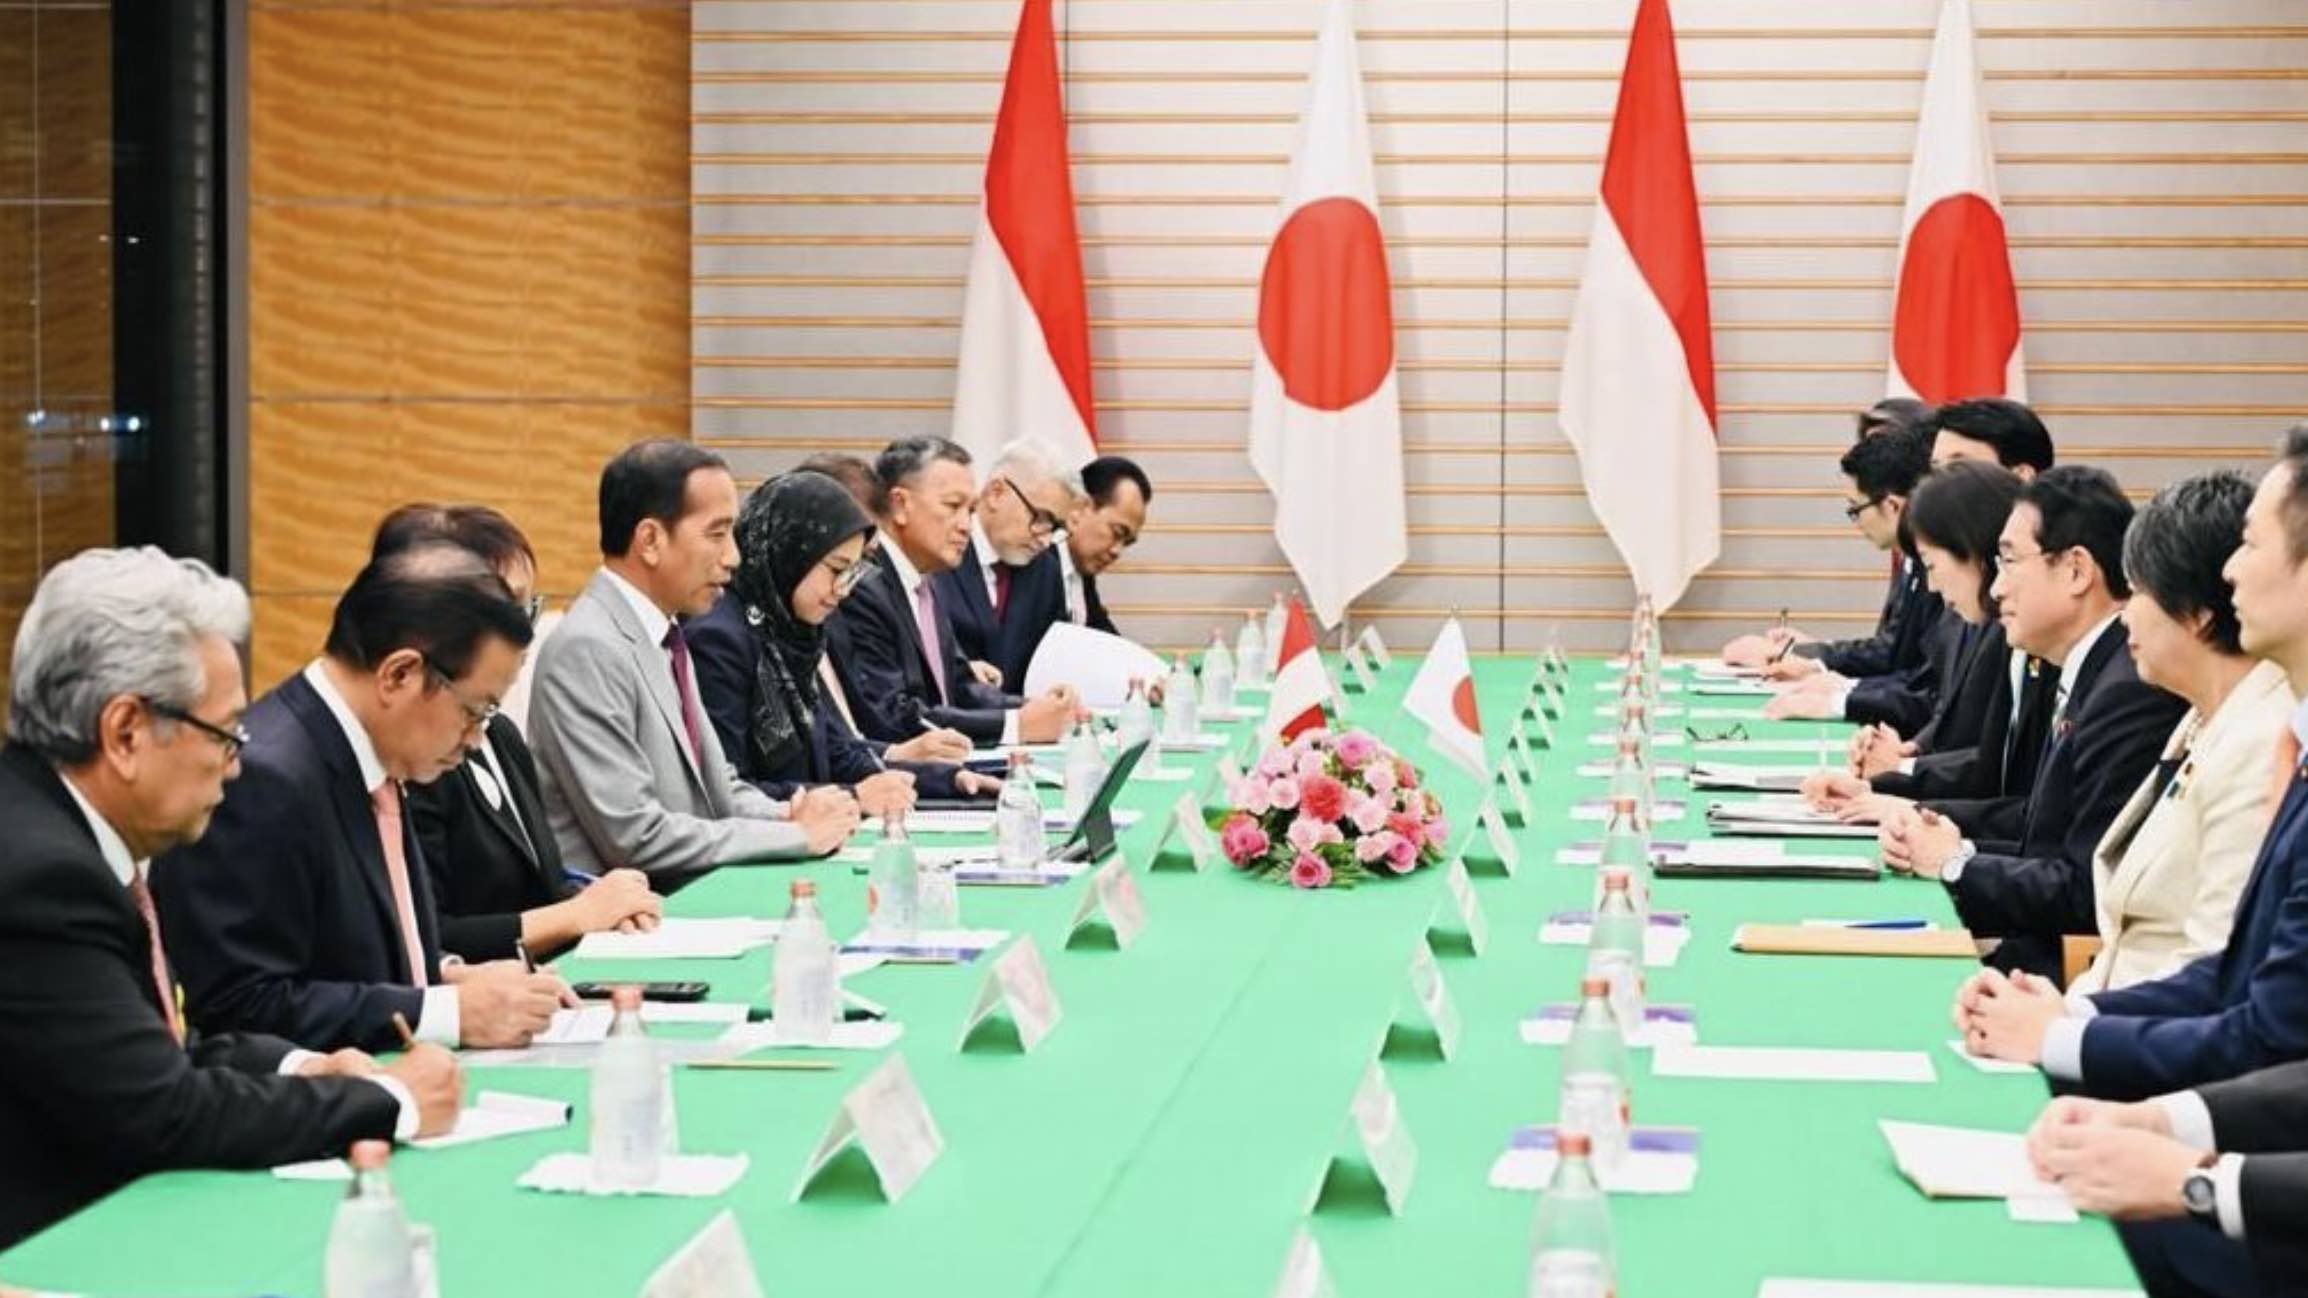 Presiden Joko Widodo dan PM Kishida Bahas Kerja Sama Bilateral Sejumlah Bidang hingga Isu Palestina